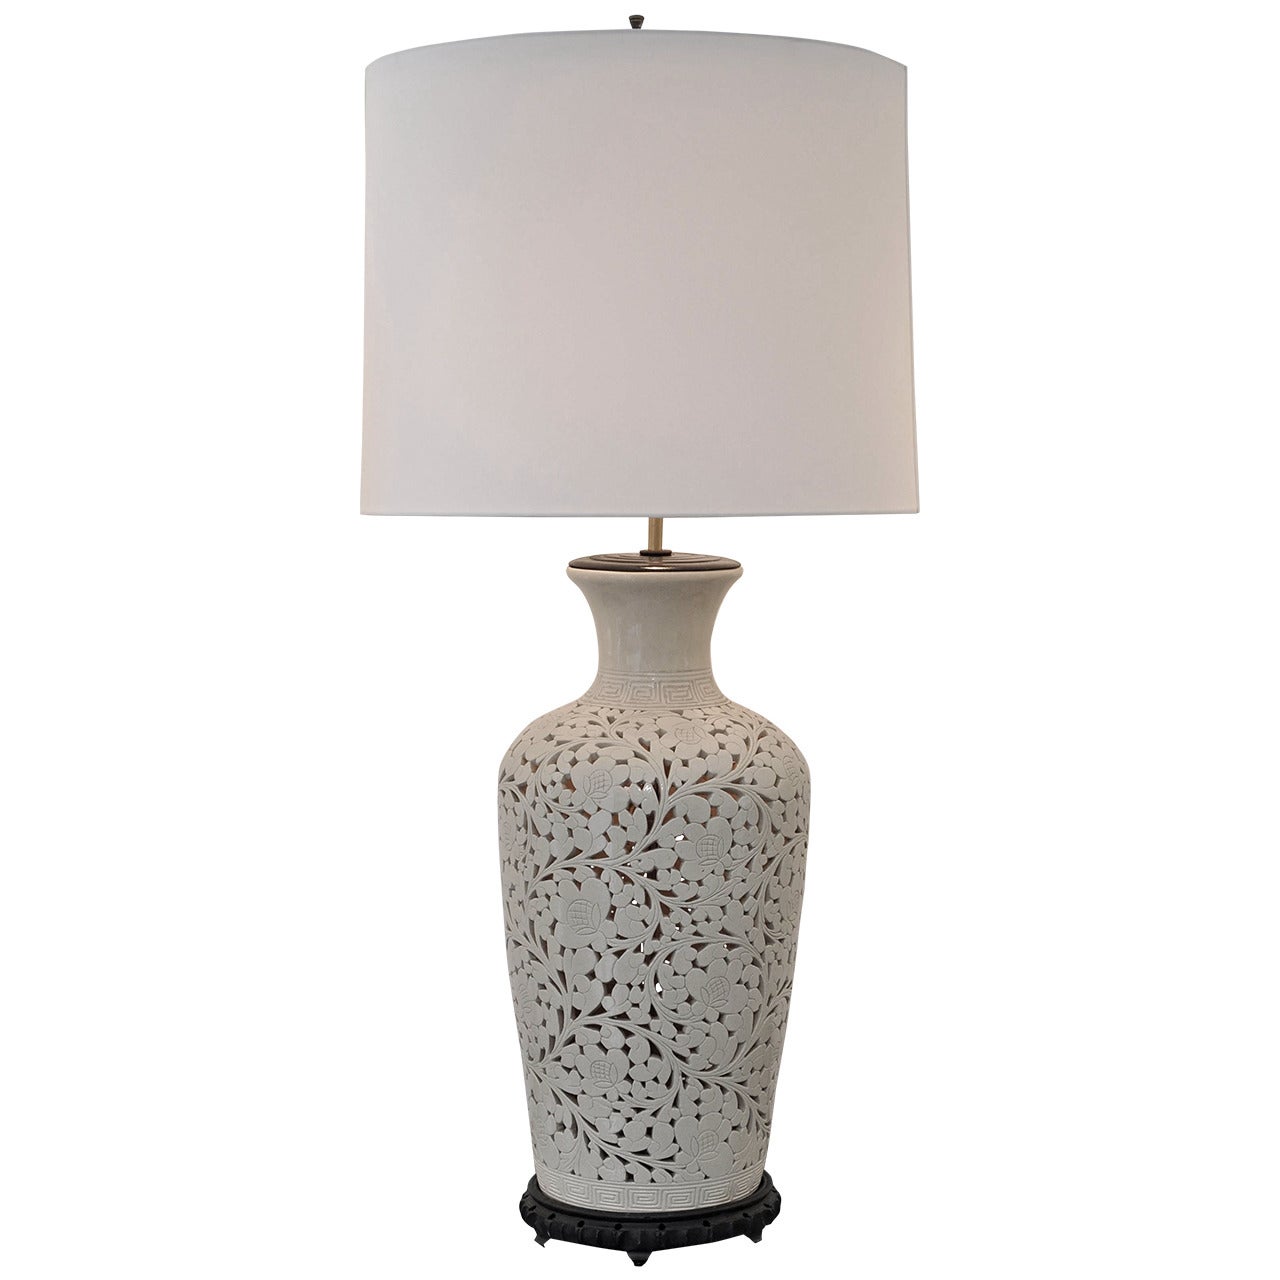 Ceramic Lamp with Interior Light